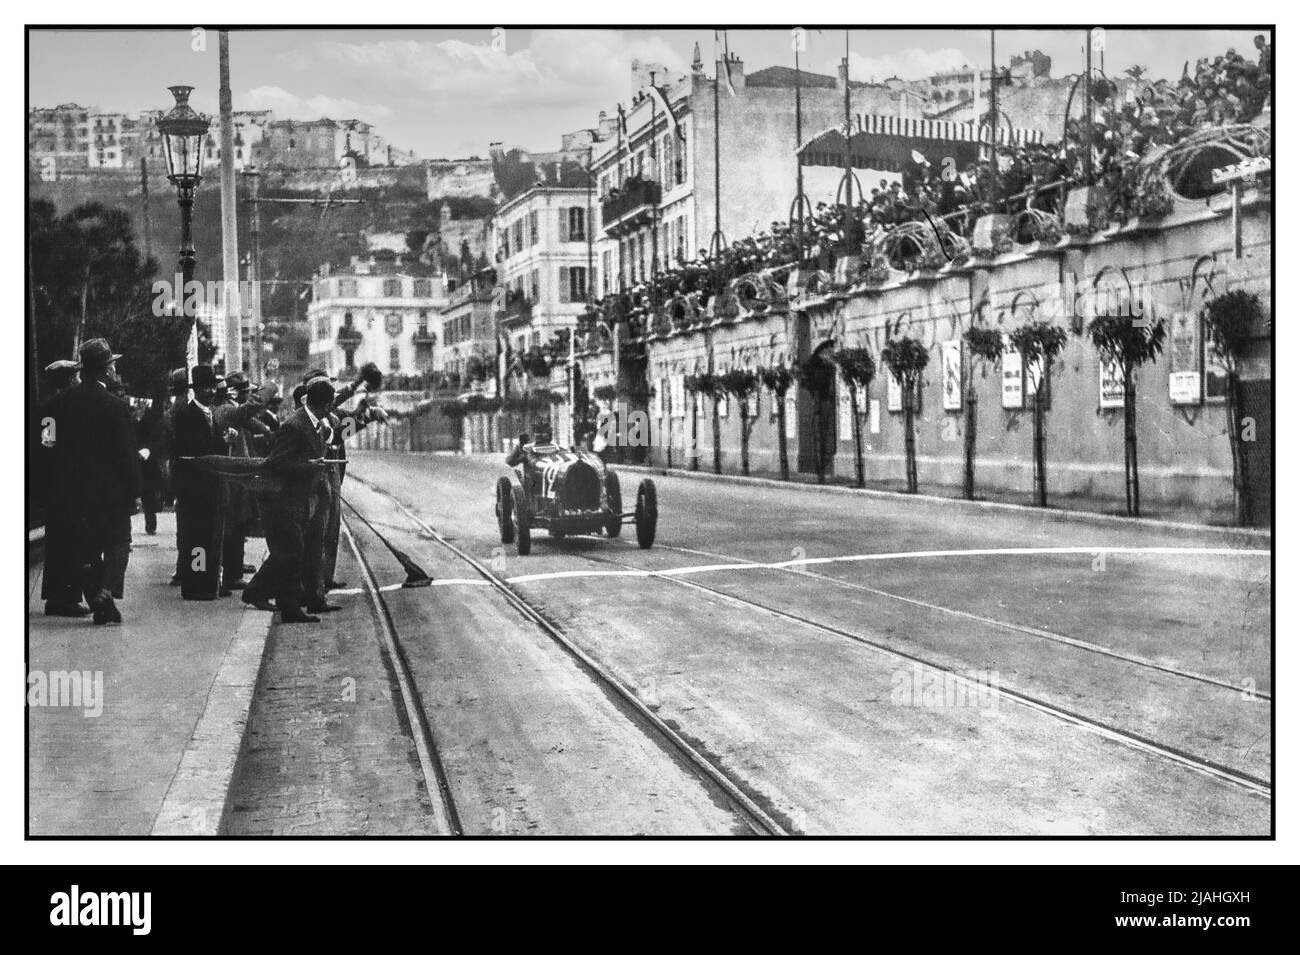 Grand Prix von Monaco 1929 das erste Rennen überhaupt mit dem Sieger William Grover Williams in einem von einem großen Rennfahrer überkreuzten Renner auf der Rennstrecke des Grand Prix von Monaco. Der Grand Prix von Monaco 1929 war der erste Grand Prix, der im Fürstentum ausgetragen wurde. Es wurde vom wohlhabenden Zigarettenhersteller Antony Noghès eingerichtet, der mit einigen seiner Freunde den Automobile Club de Monaco gegründet hatte. Dieses Angebot eines Grand Prix wurde von Prinz Louis II. Und dem damaligen monégasken Fahrer Louis Chiron unterstützt. Am 14. April 1929 wurde es Realität, als 16 geladene Teilnehmer sich für einen Preis von 100.000 Franken ausloten Stockfoto